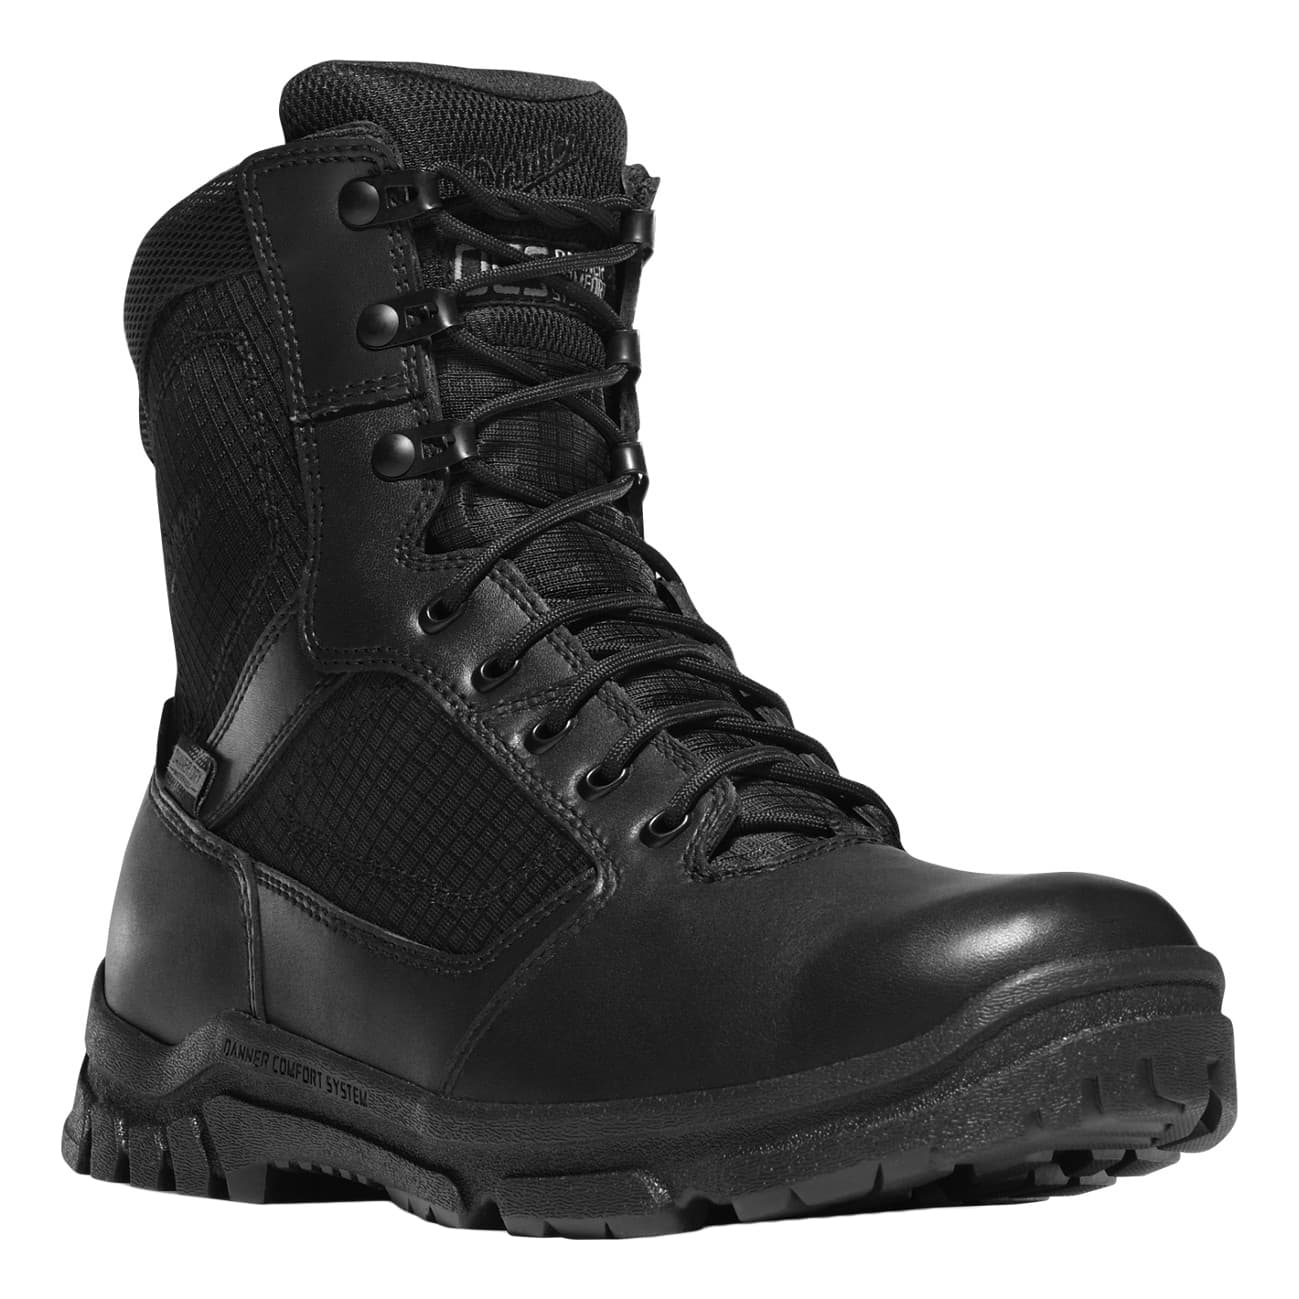 Top 10 Best Tactical Boots for Survival & Law Enforcement 